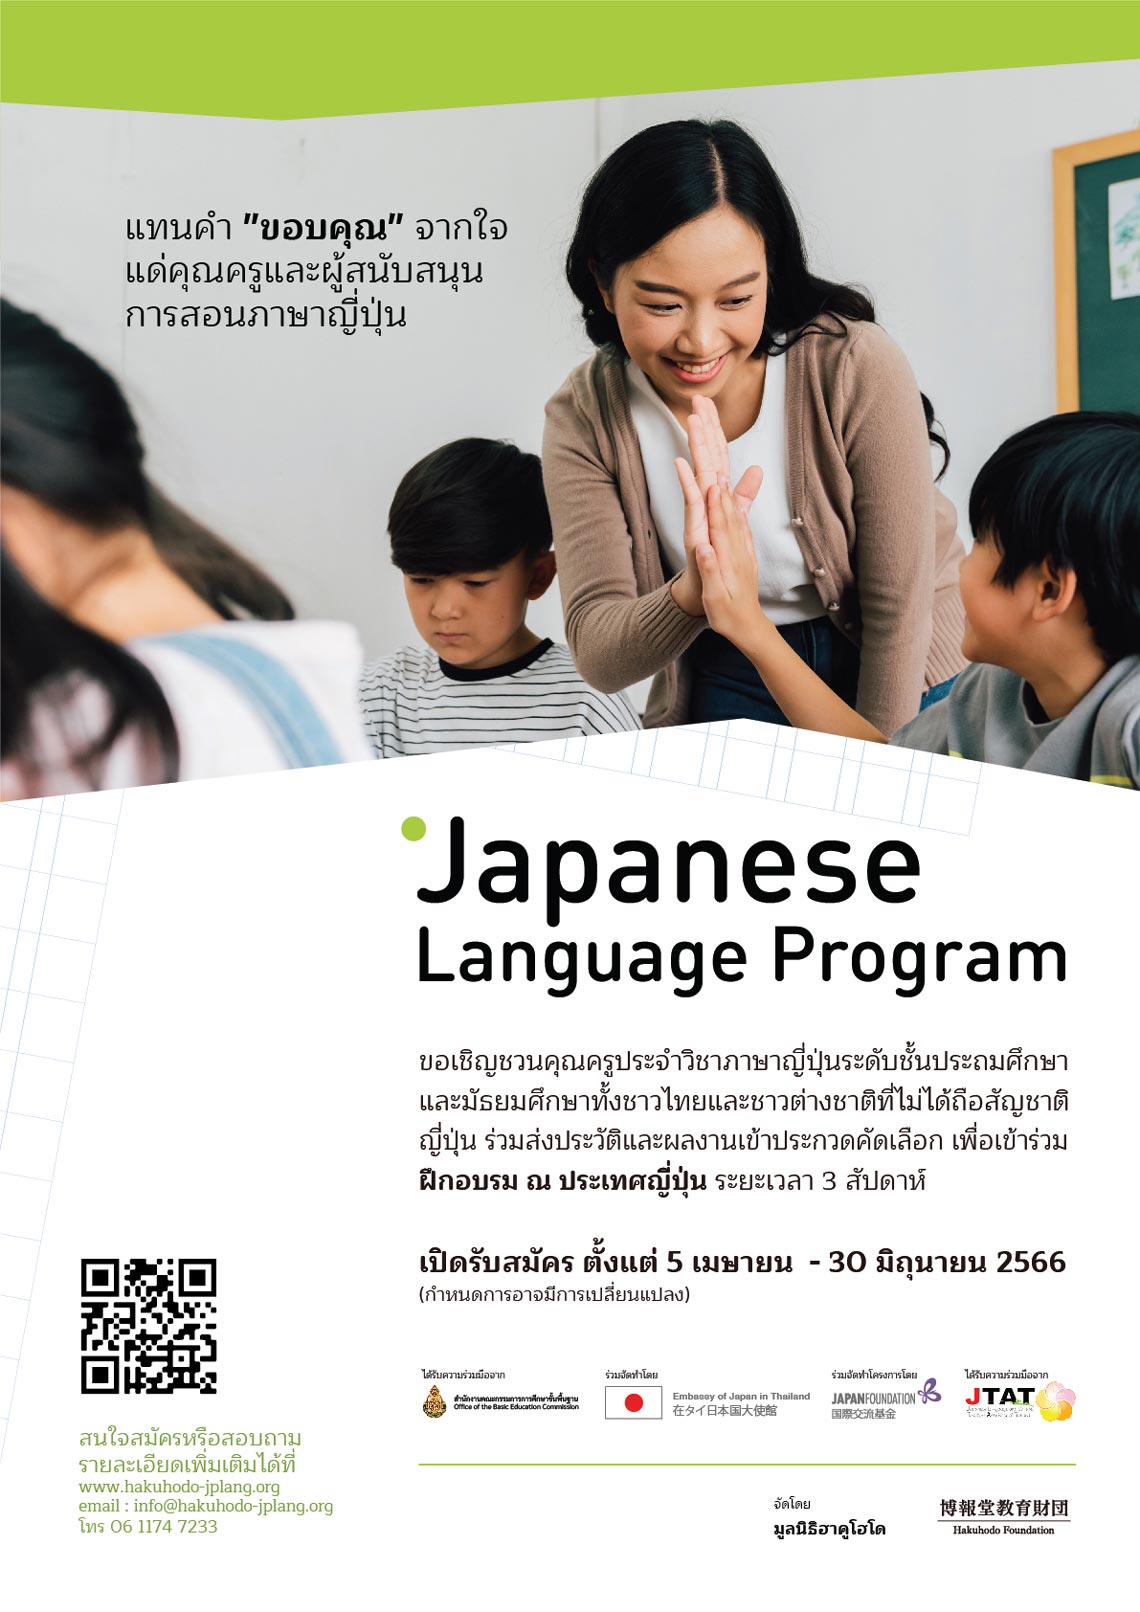 โครงการทุนอบรมครู ณ ประเทศญี่ปุ่น มูลนิธิฮาคูโฮโด